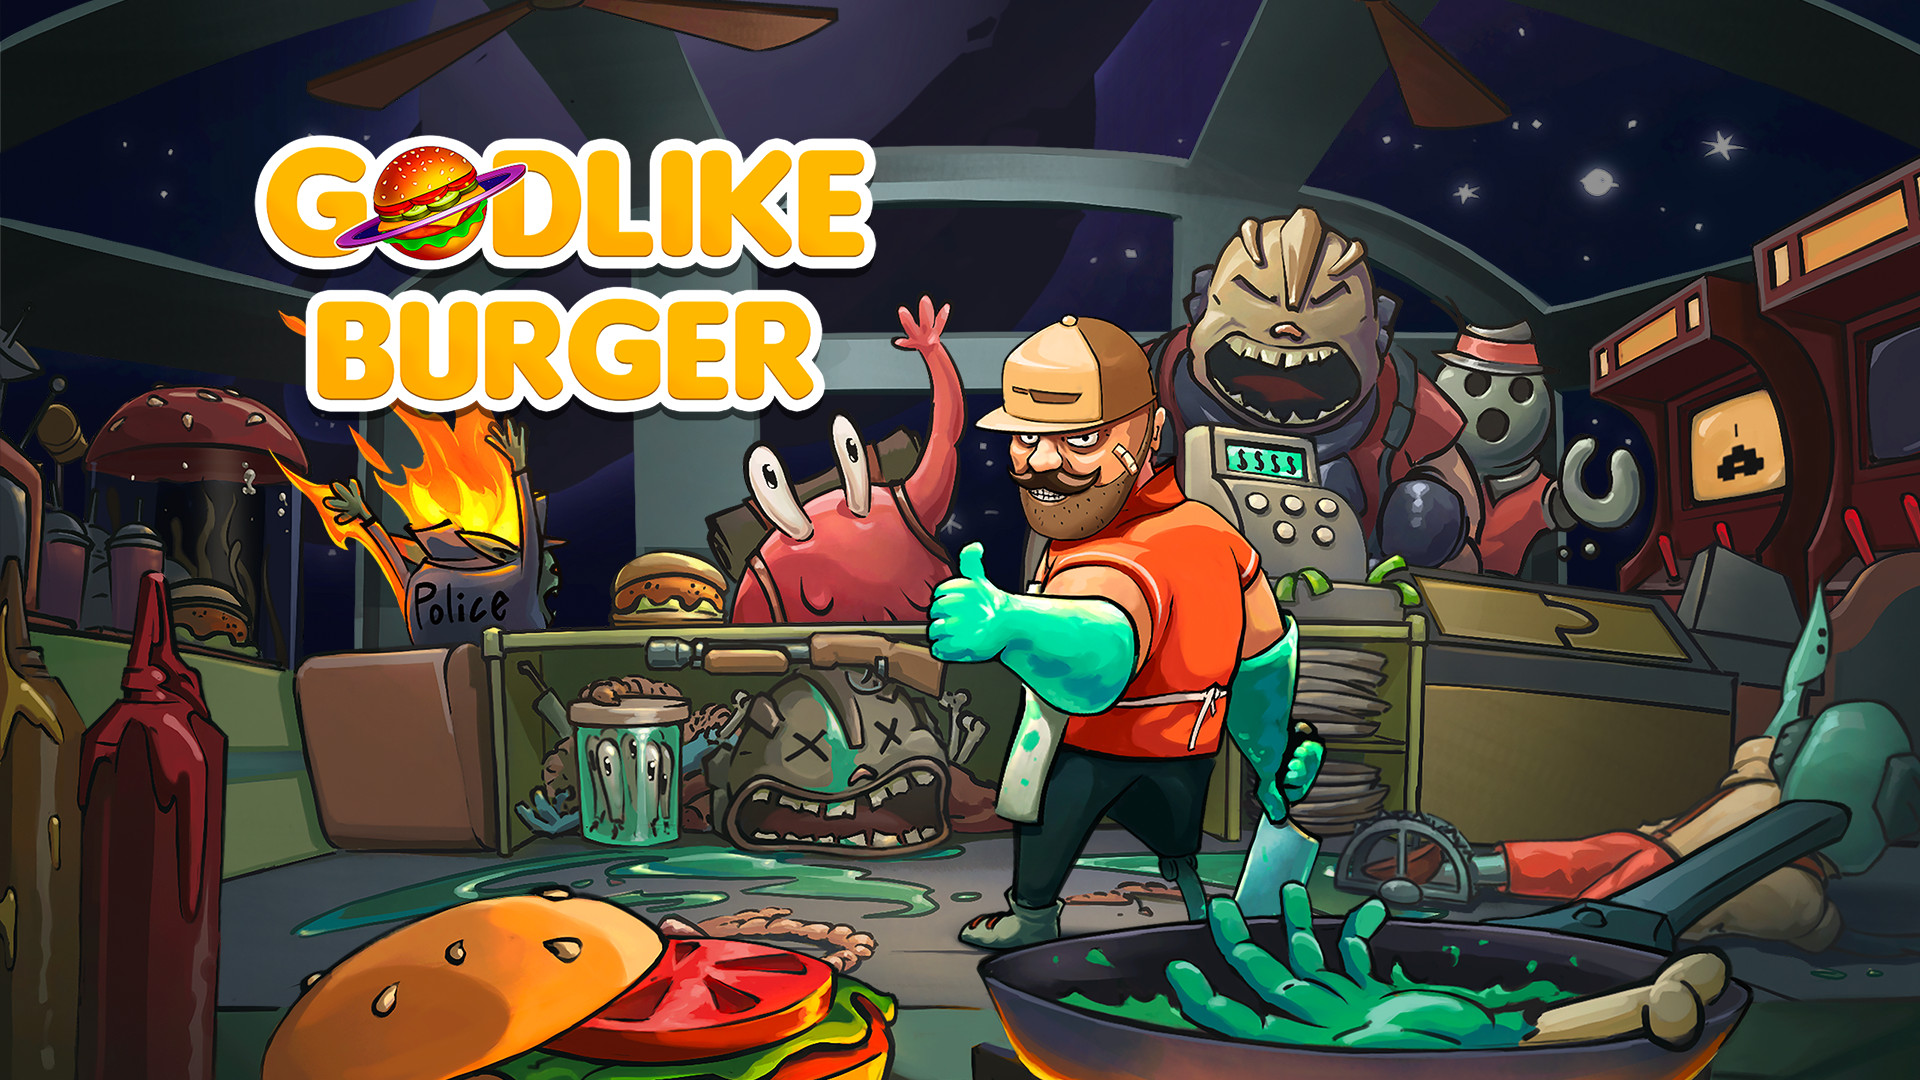 Godlike Burger – Análise do jogo